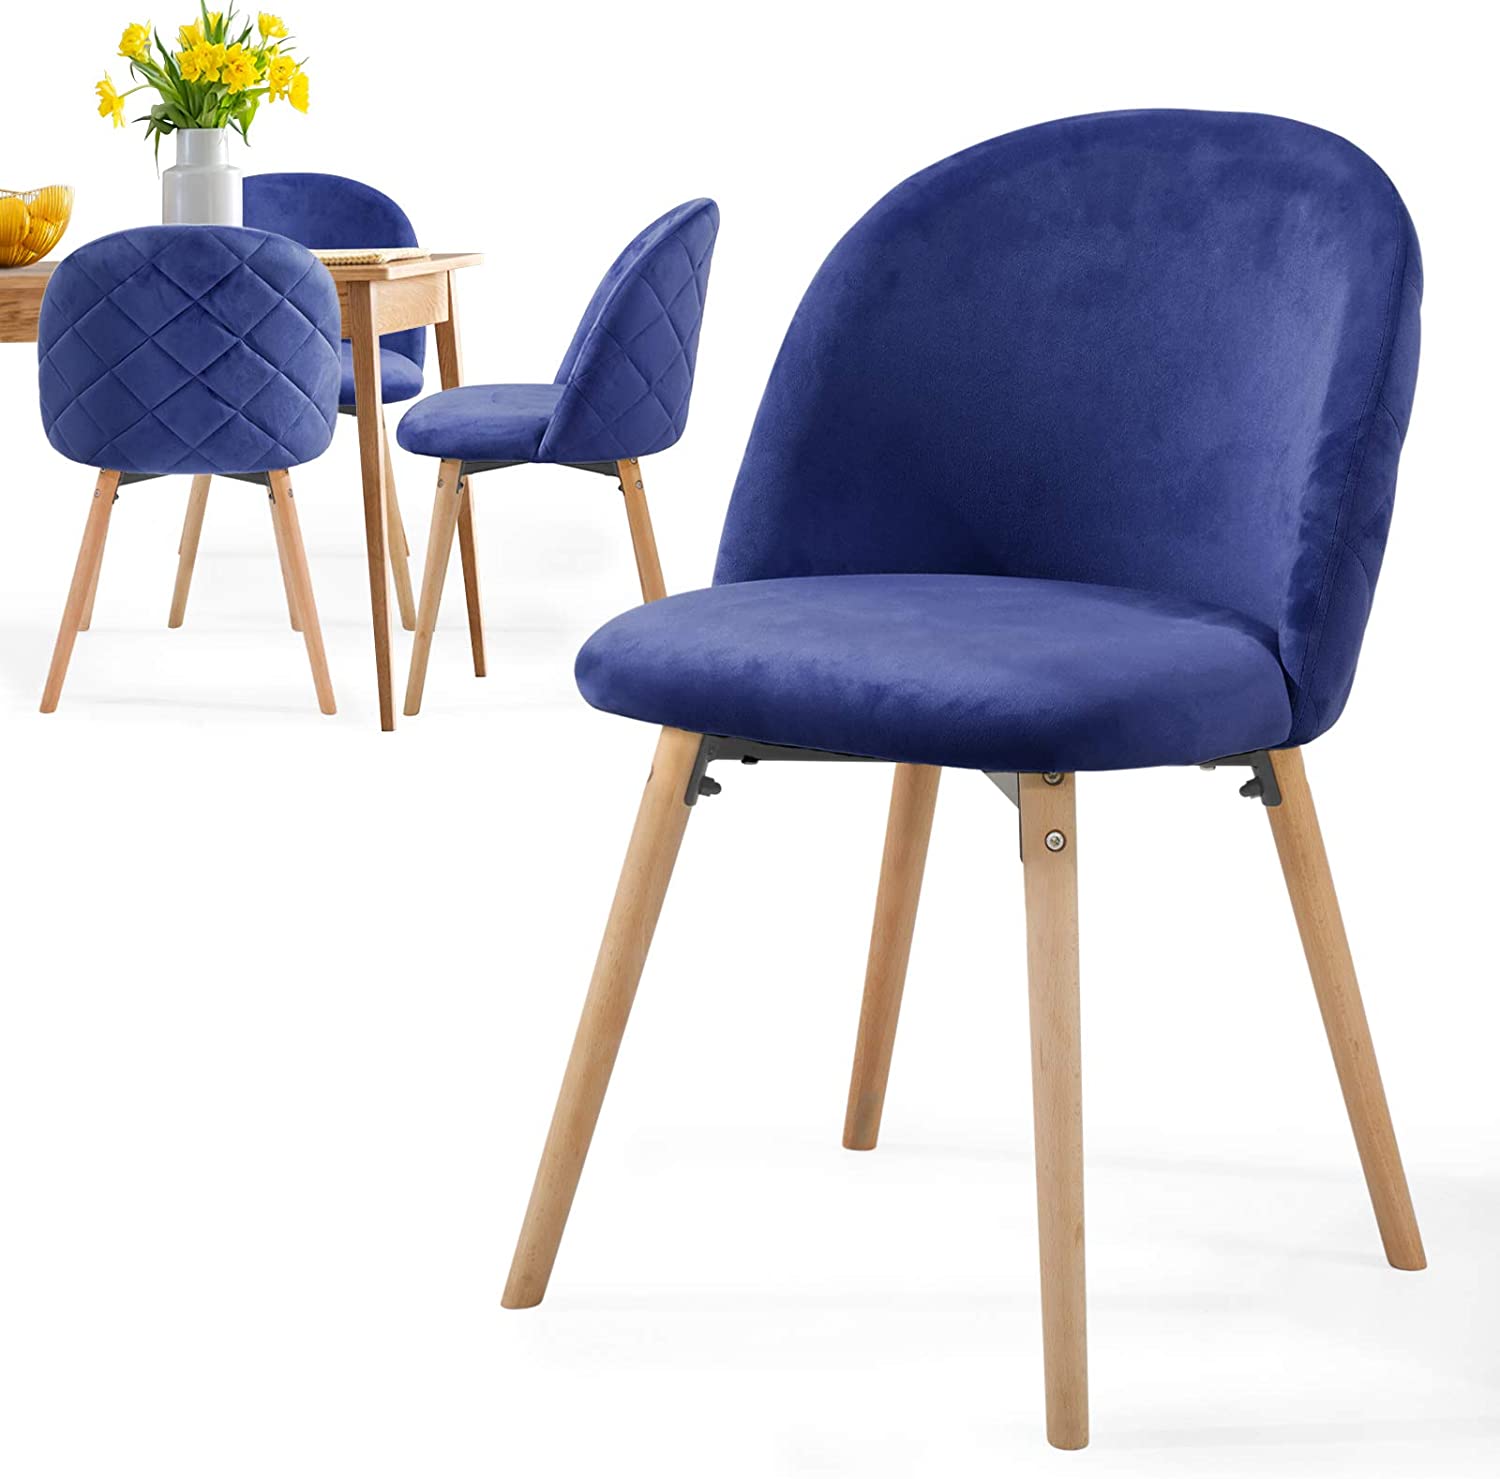 Eetkamerstoelen – Lounge stoelen – Scandinavisch – Retro – Vintage – Gestoffeerd – Set van 4 – Blauw